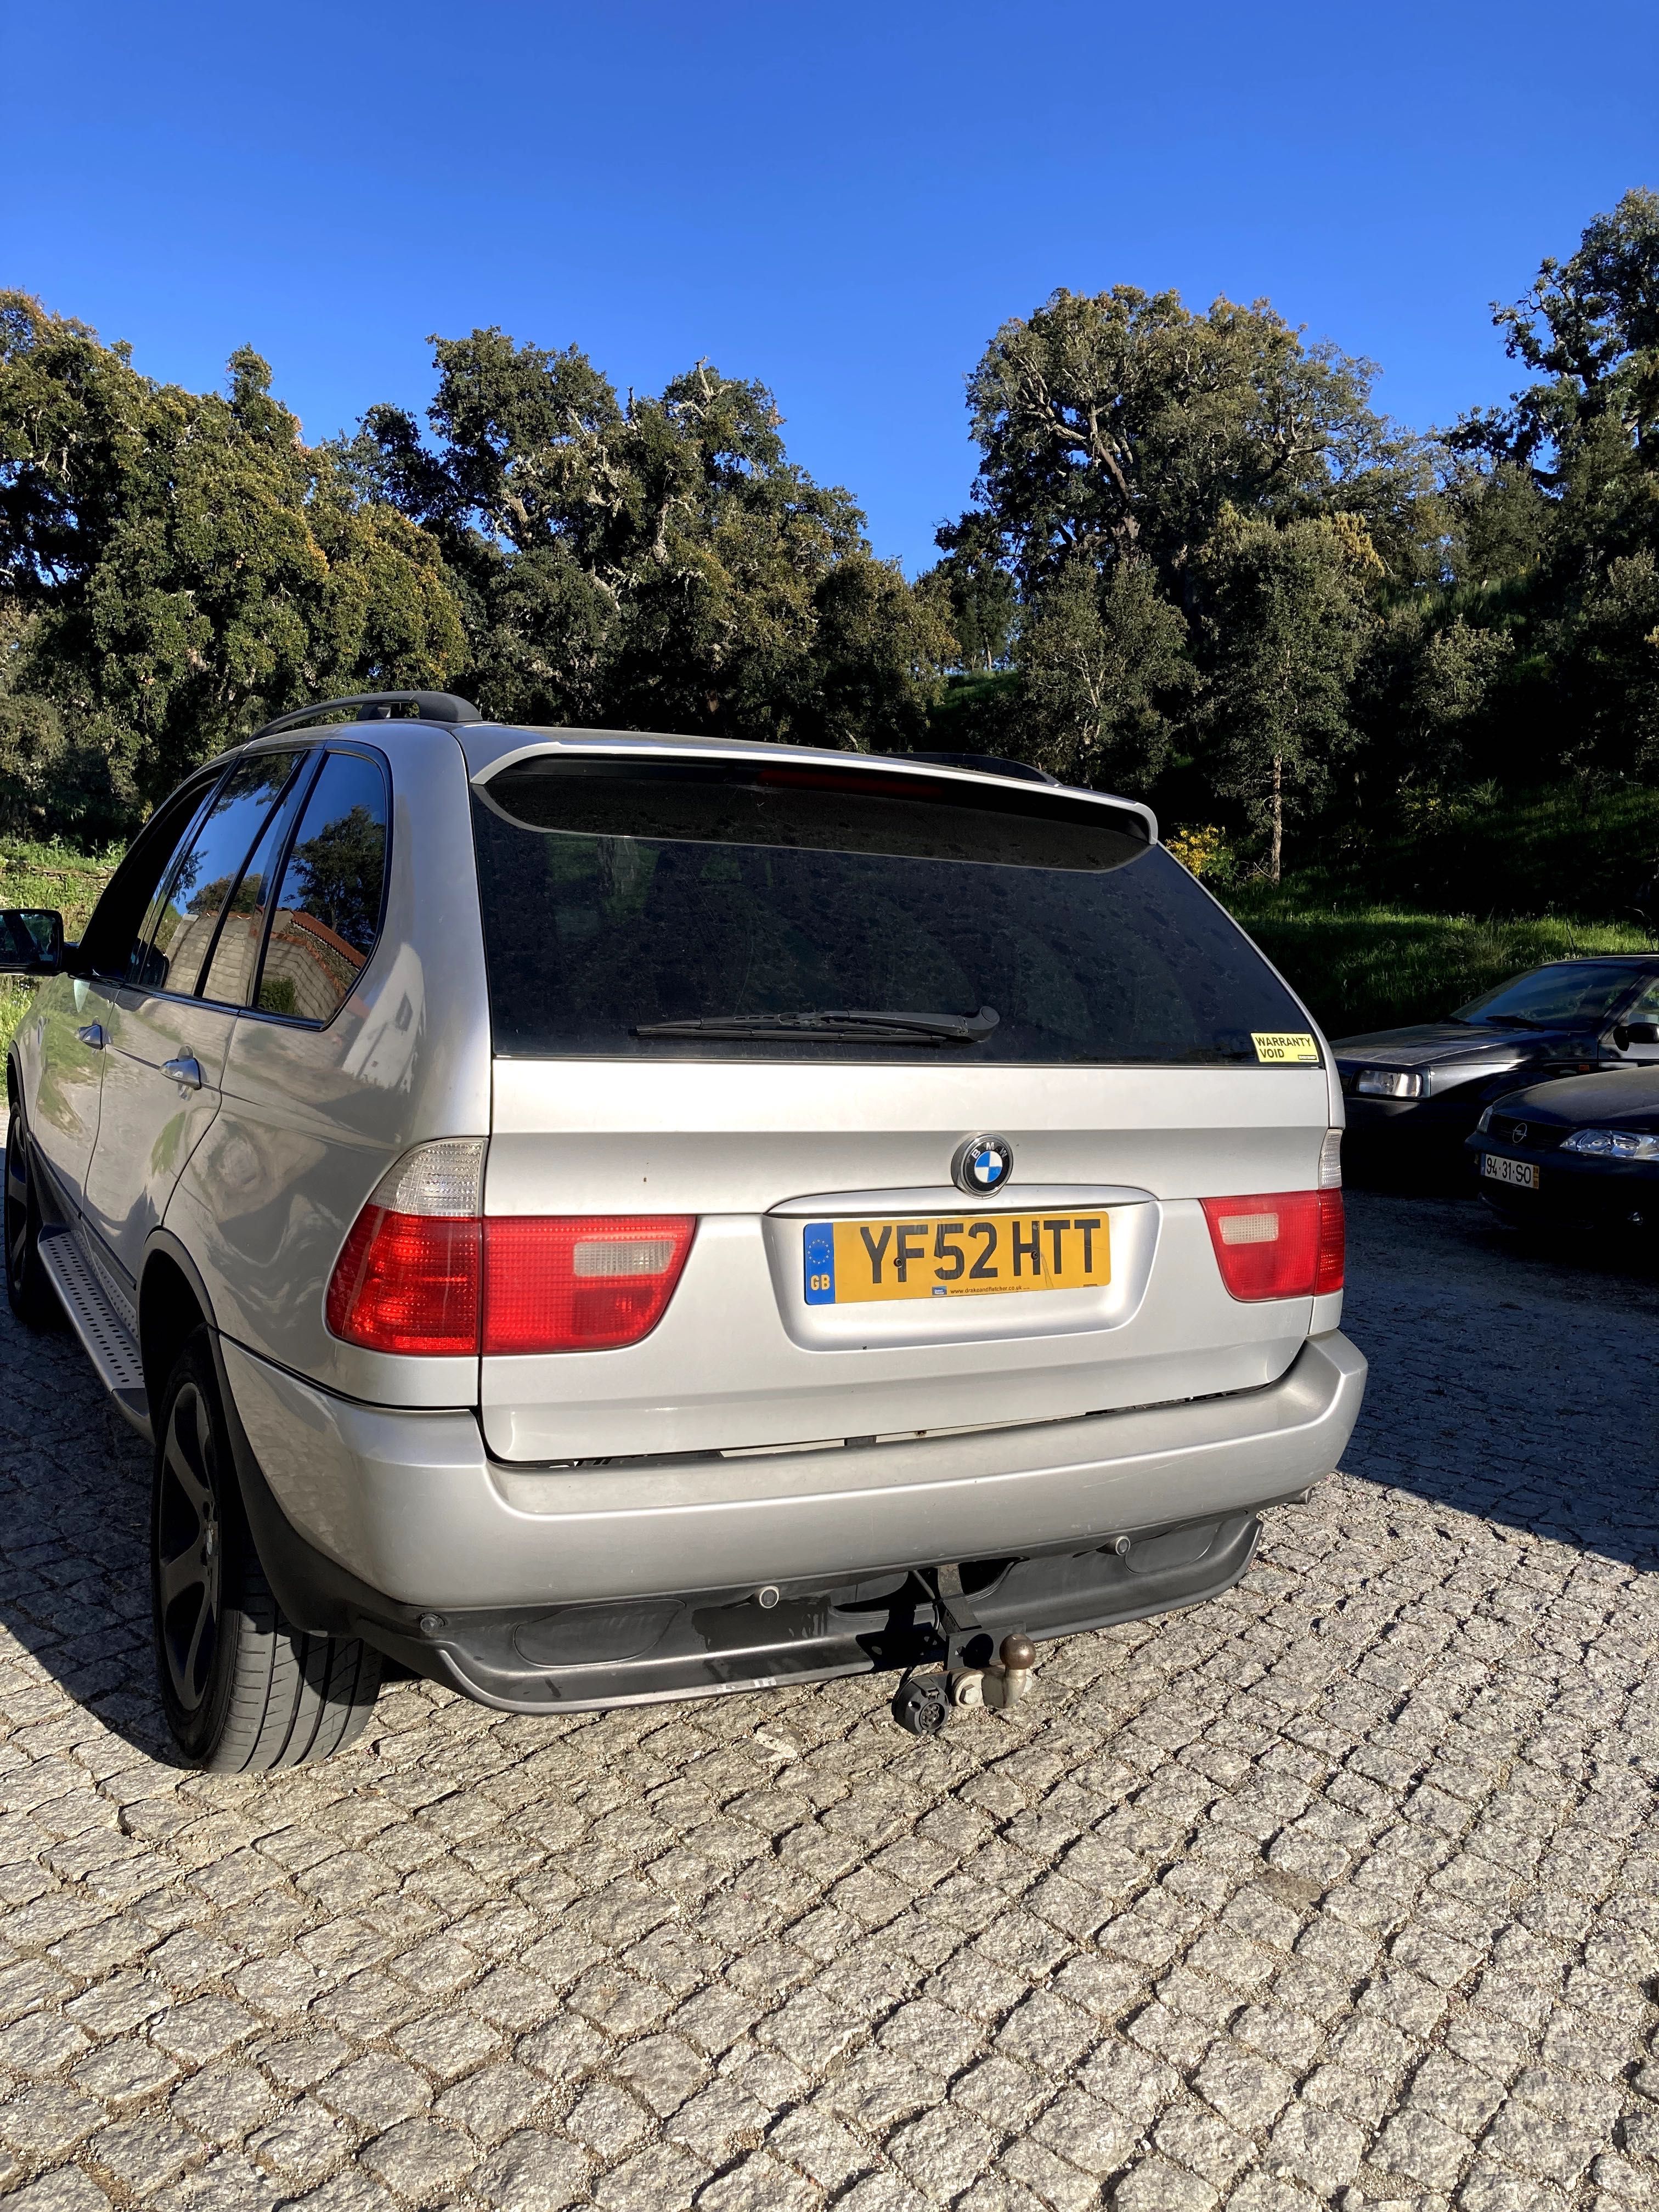 BMW X5 (e53) para peças